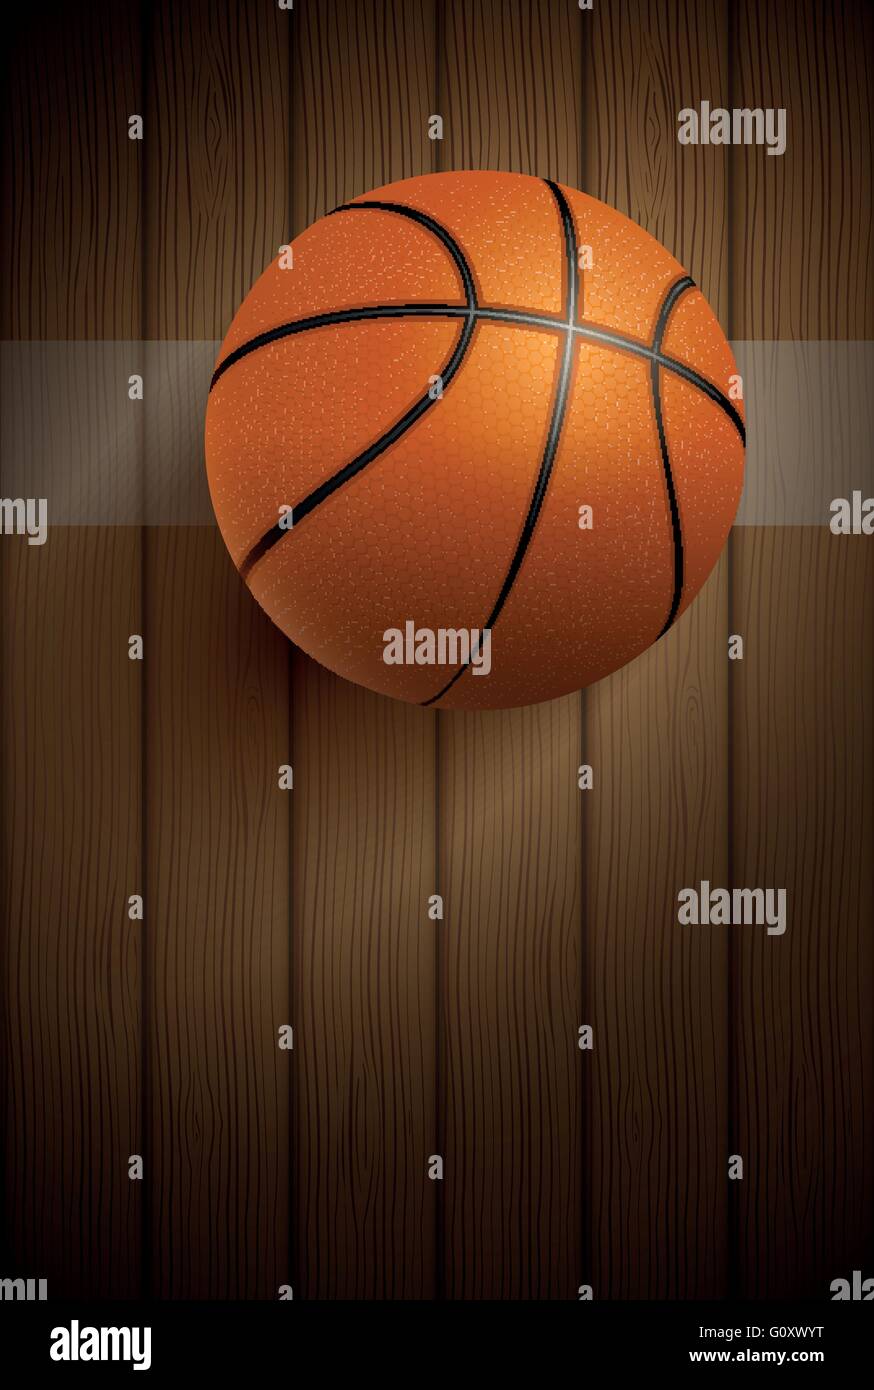 Basket realistica palla sul pavimento in legno. Illustrazione Vettoriale. Illustrazione Vettoriale